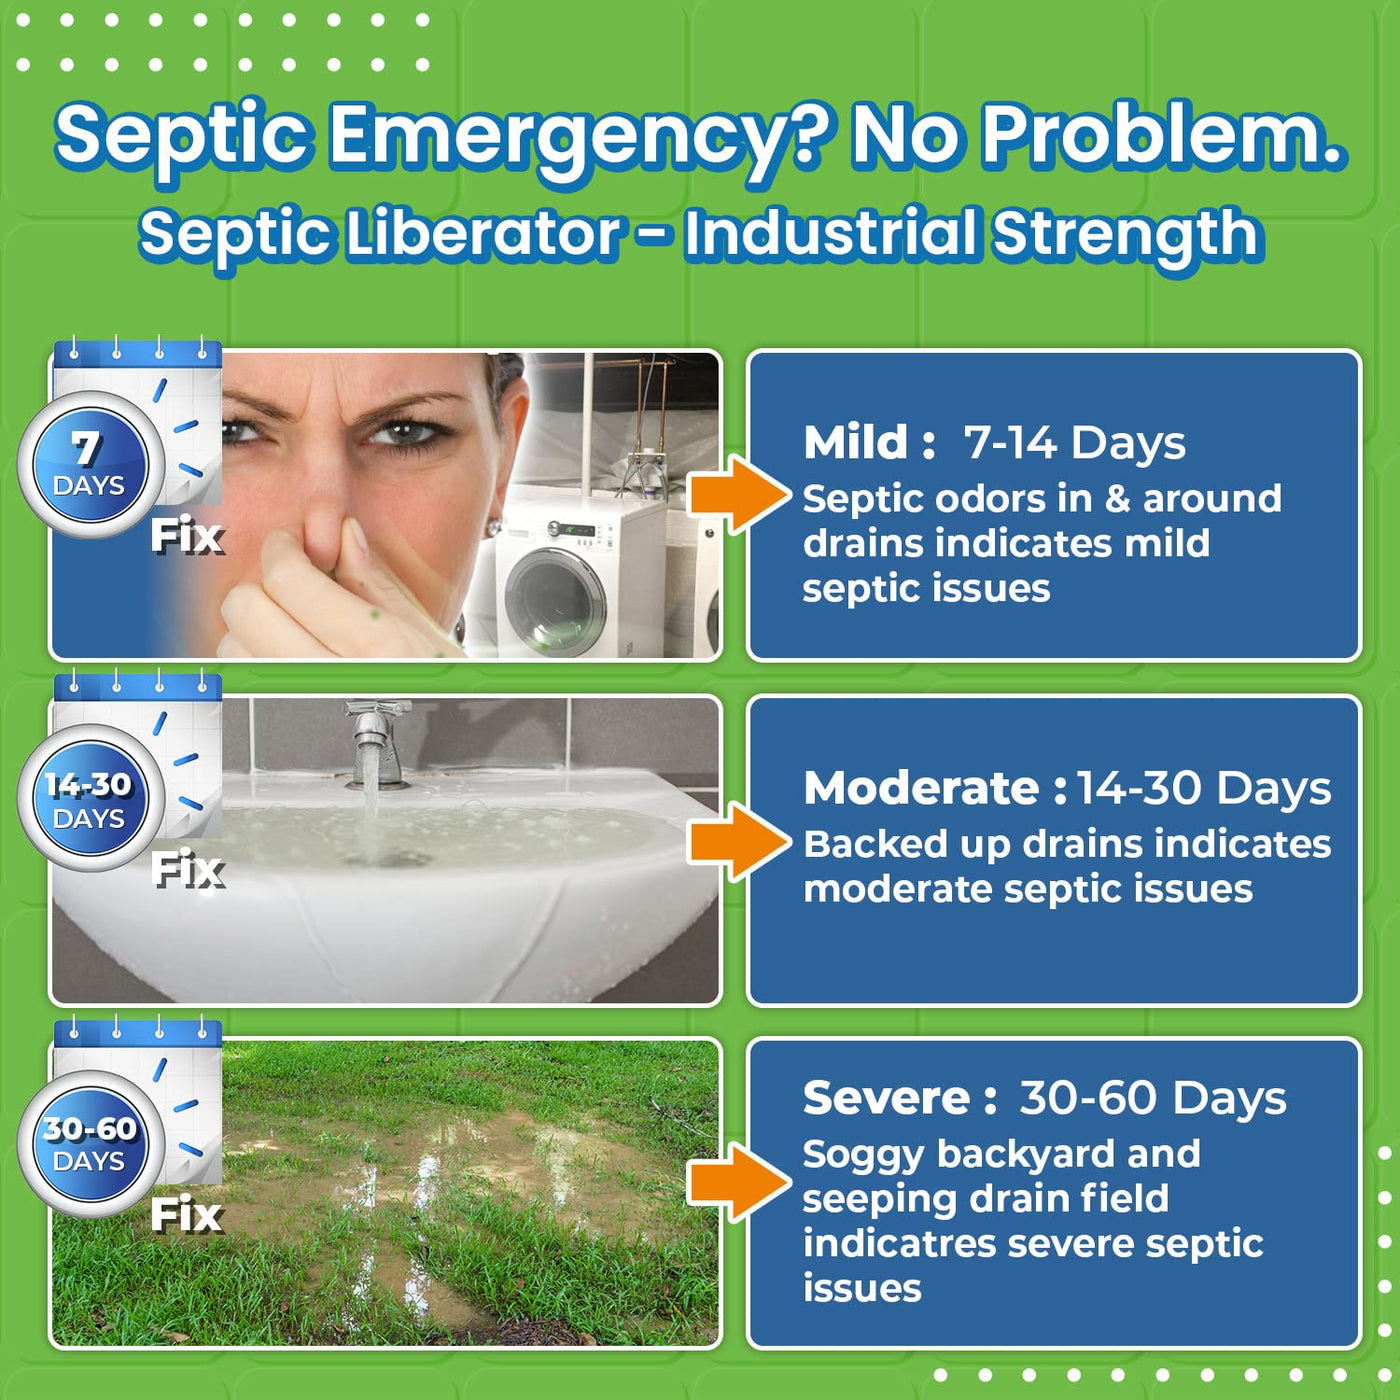 EcoStrong Septic Liberator#size_1-gallon-jug-liquid